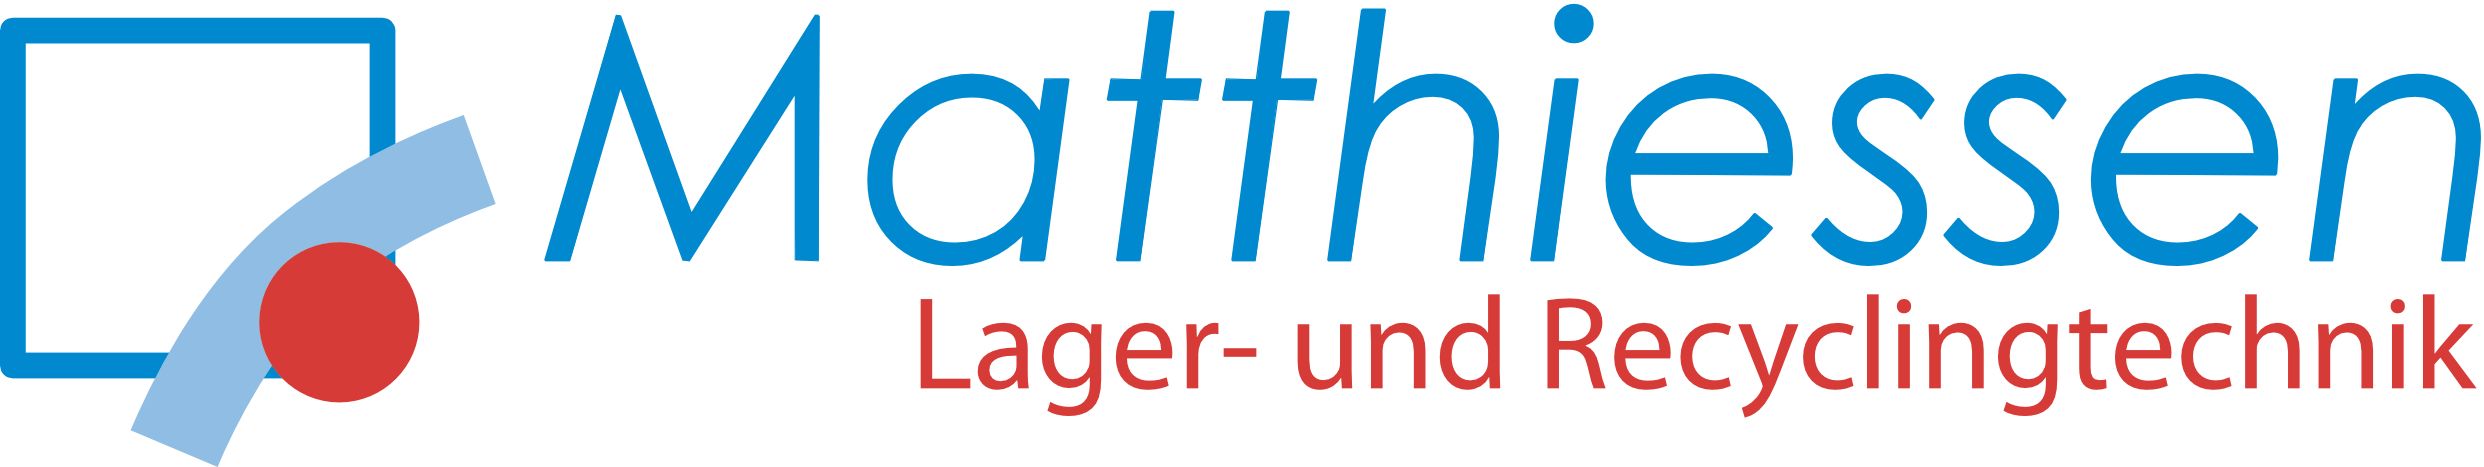 Matthiessen Lagertechnik GmbH